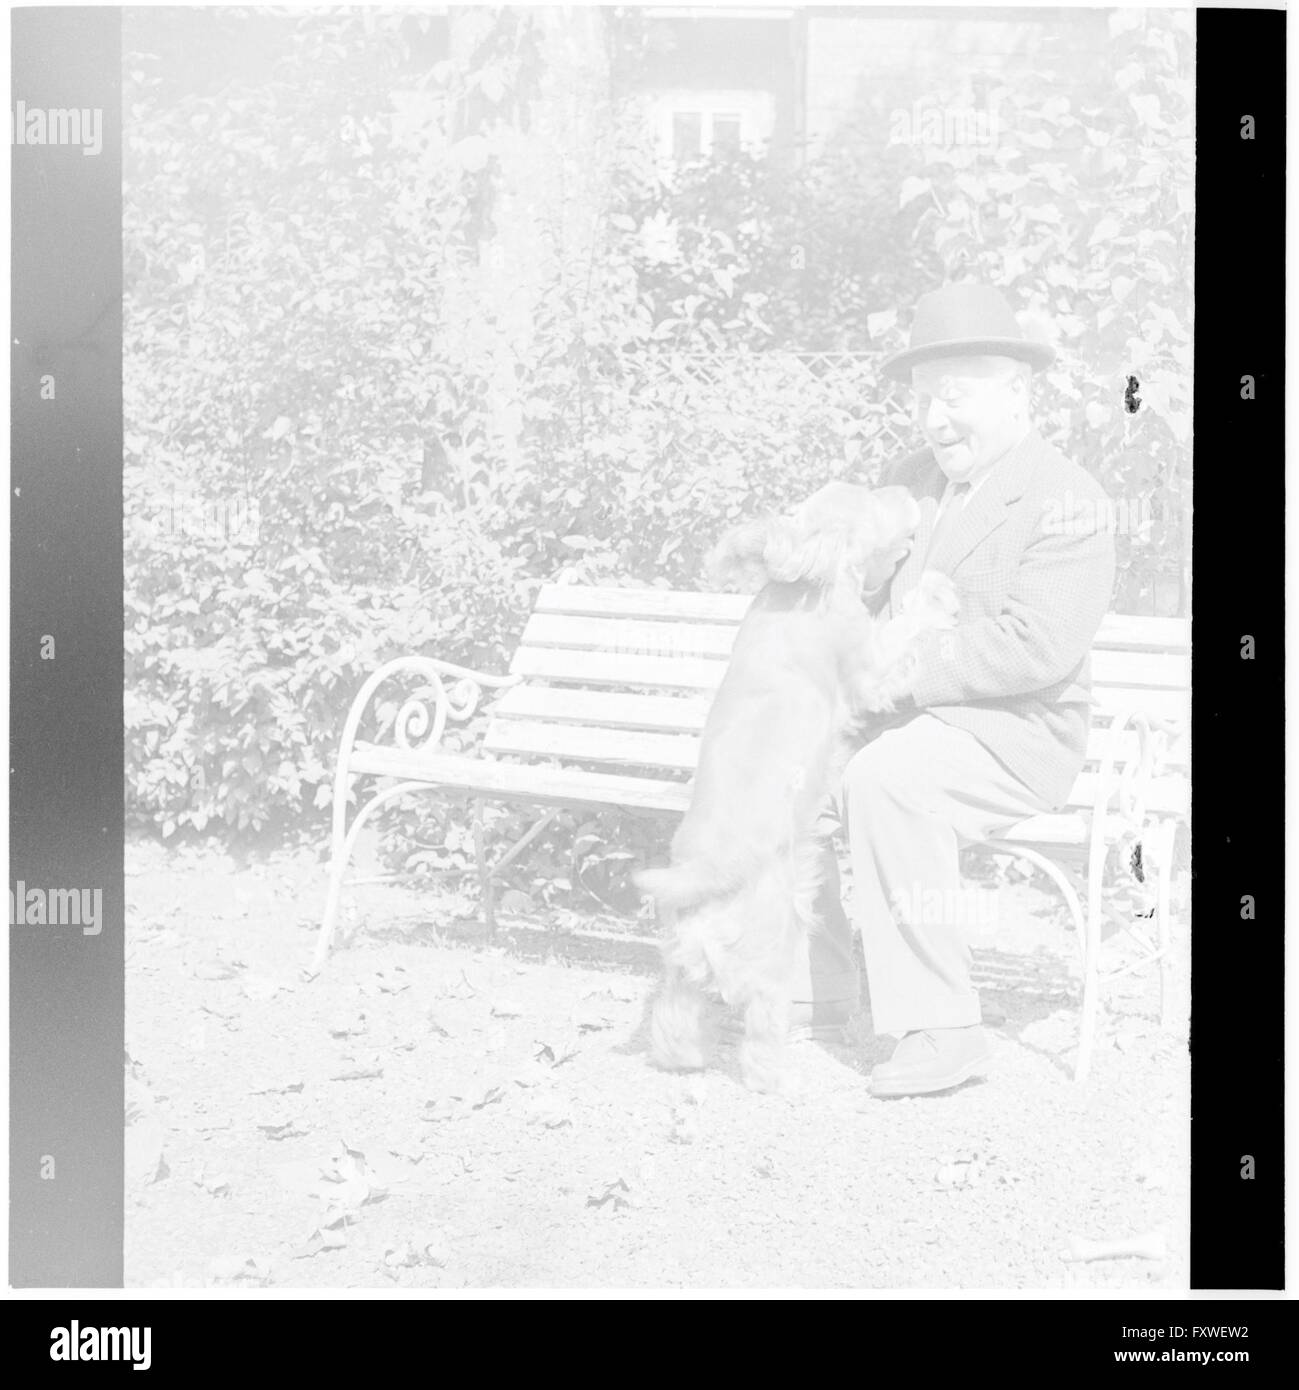 Thimig sitzt auf einer Bank, mit seinem Hund ... Stock Photo